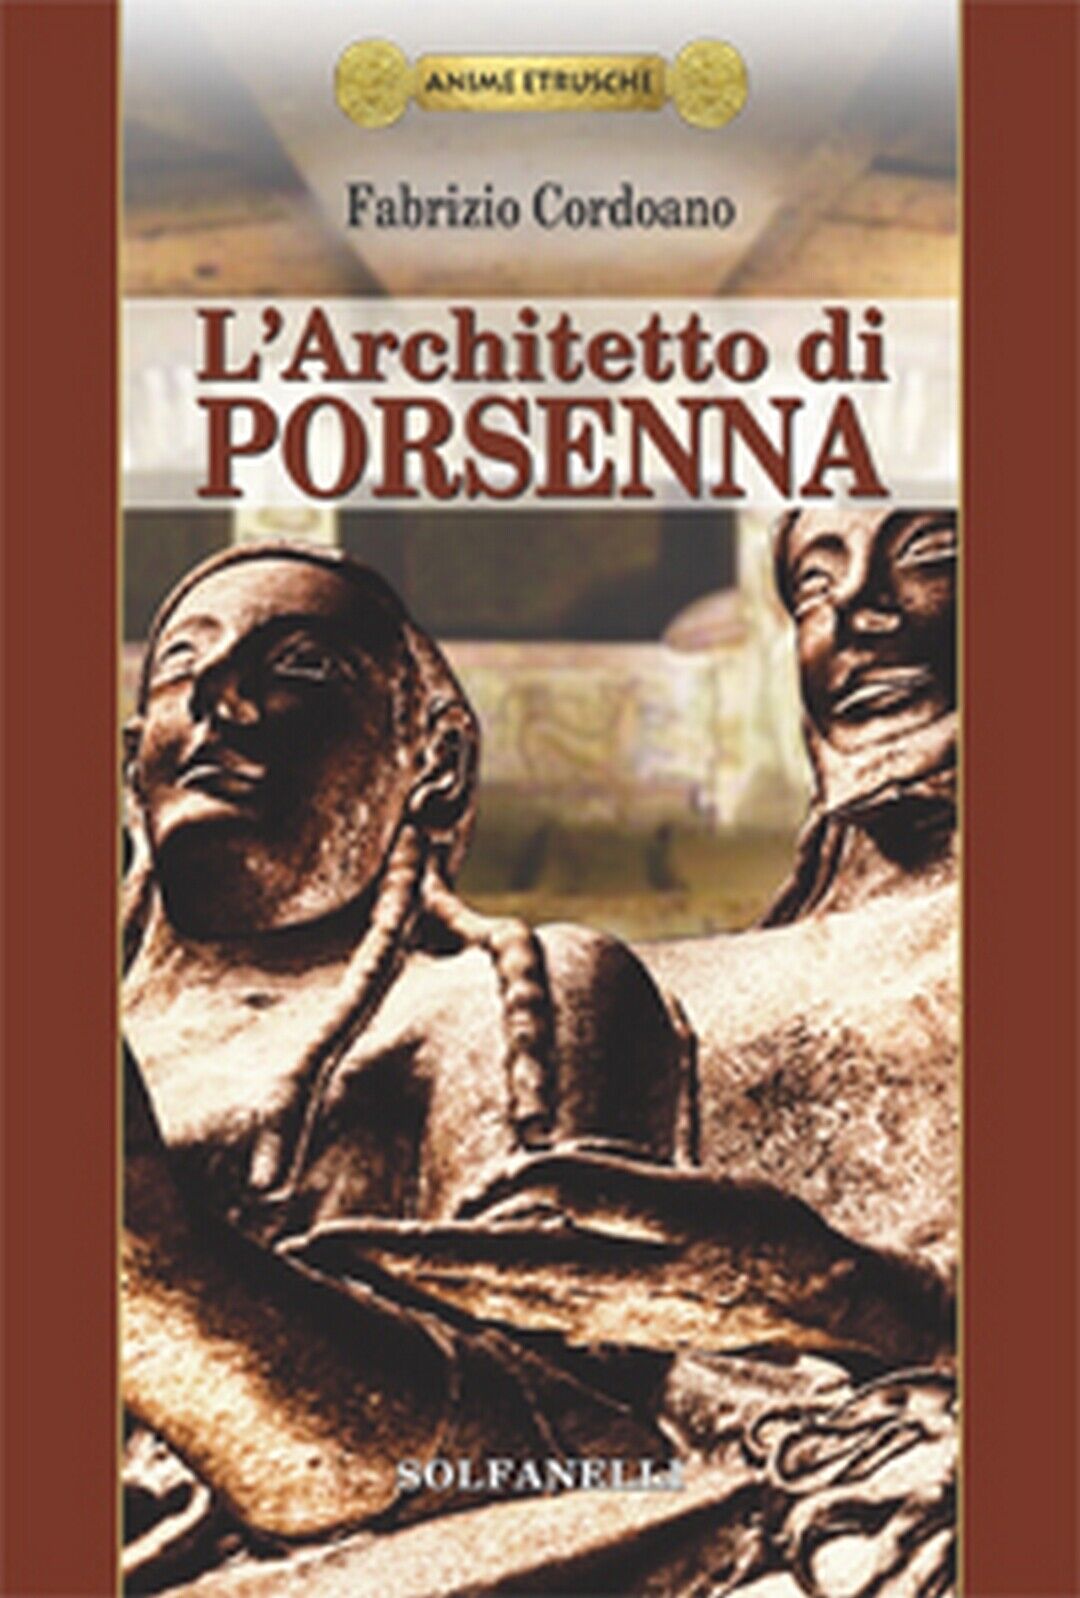 Anime Etrusche L'ARCHITETTO DI PORSENNA  di Fabrizio Cordoano,  Solfanelli Ediz.